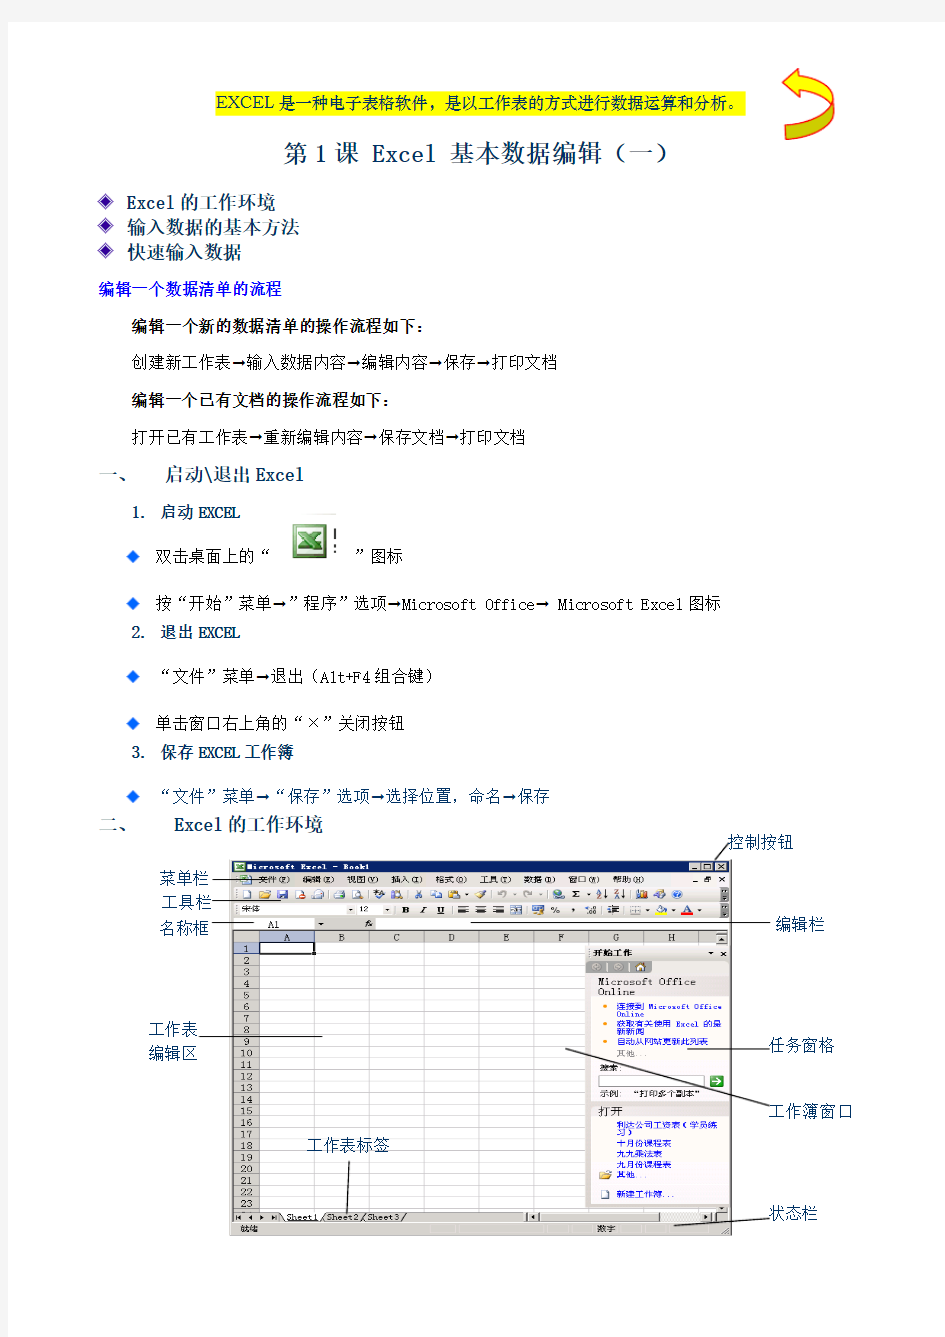 EXCEL是一种电子表格软件笔记